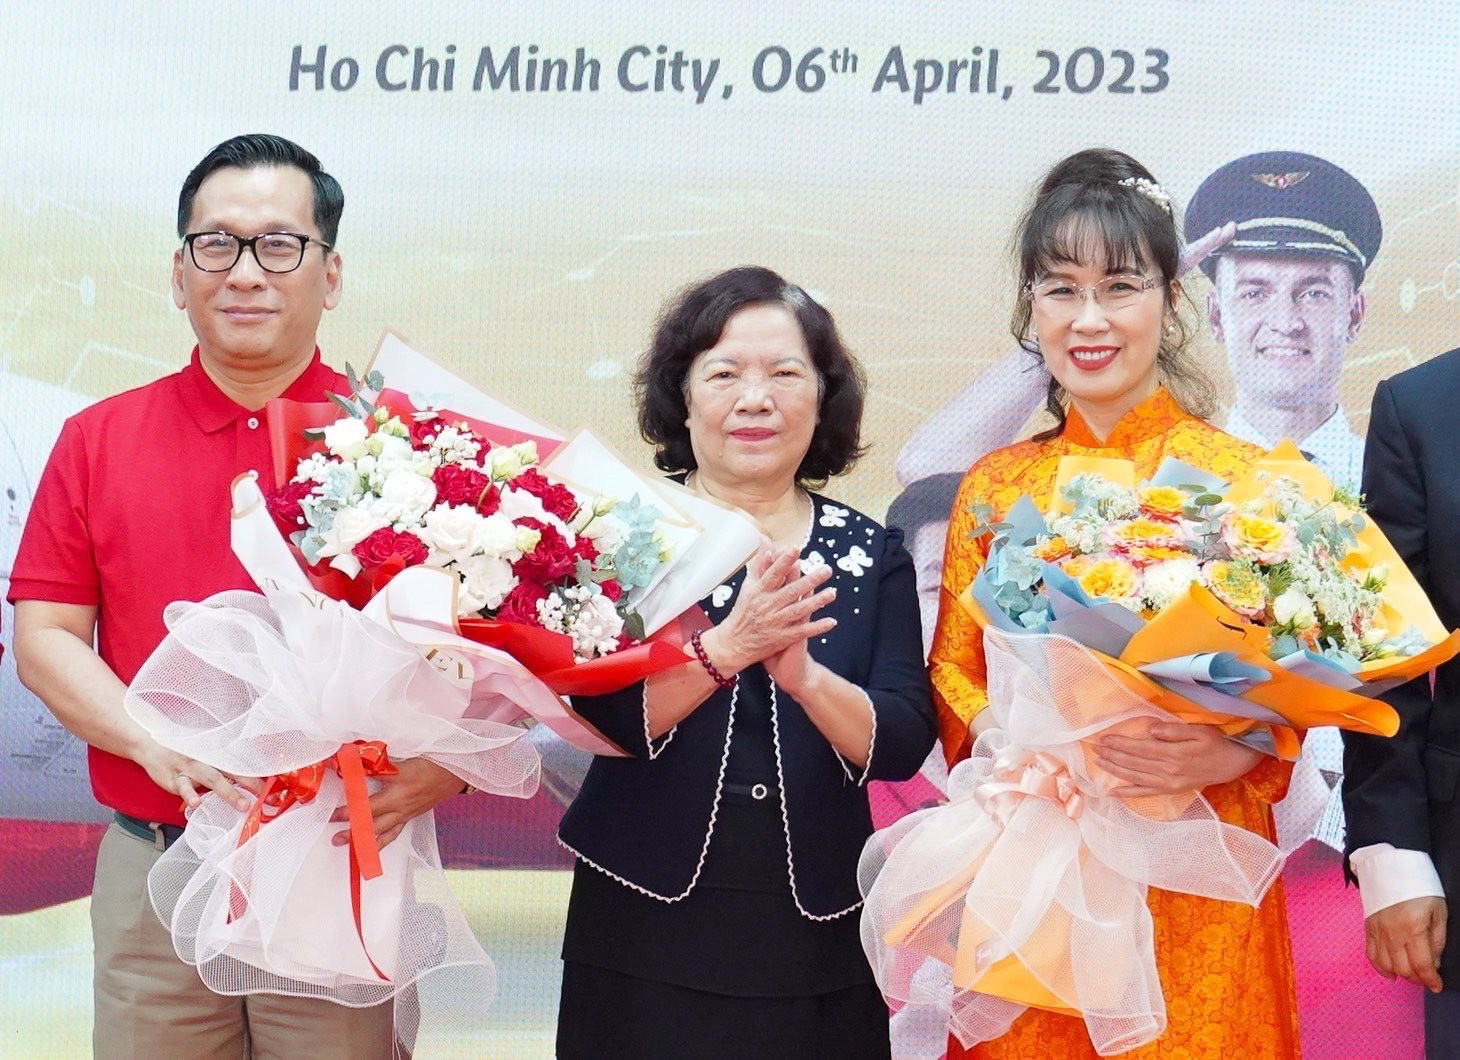 Bà Nguyễn Thị Phương Thảo thôi làm Tổng giám đốc Vietjet Air để ngồi ghế Chủ tịch Hội đồng quản trị